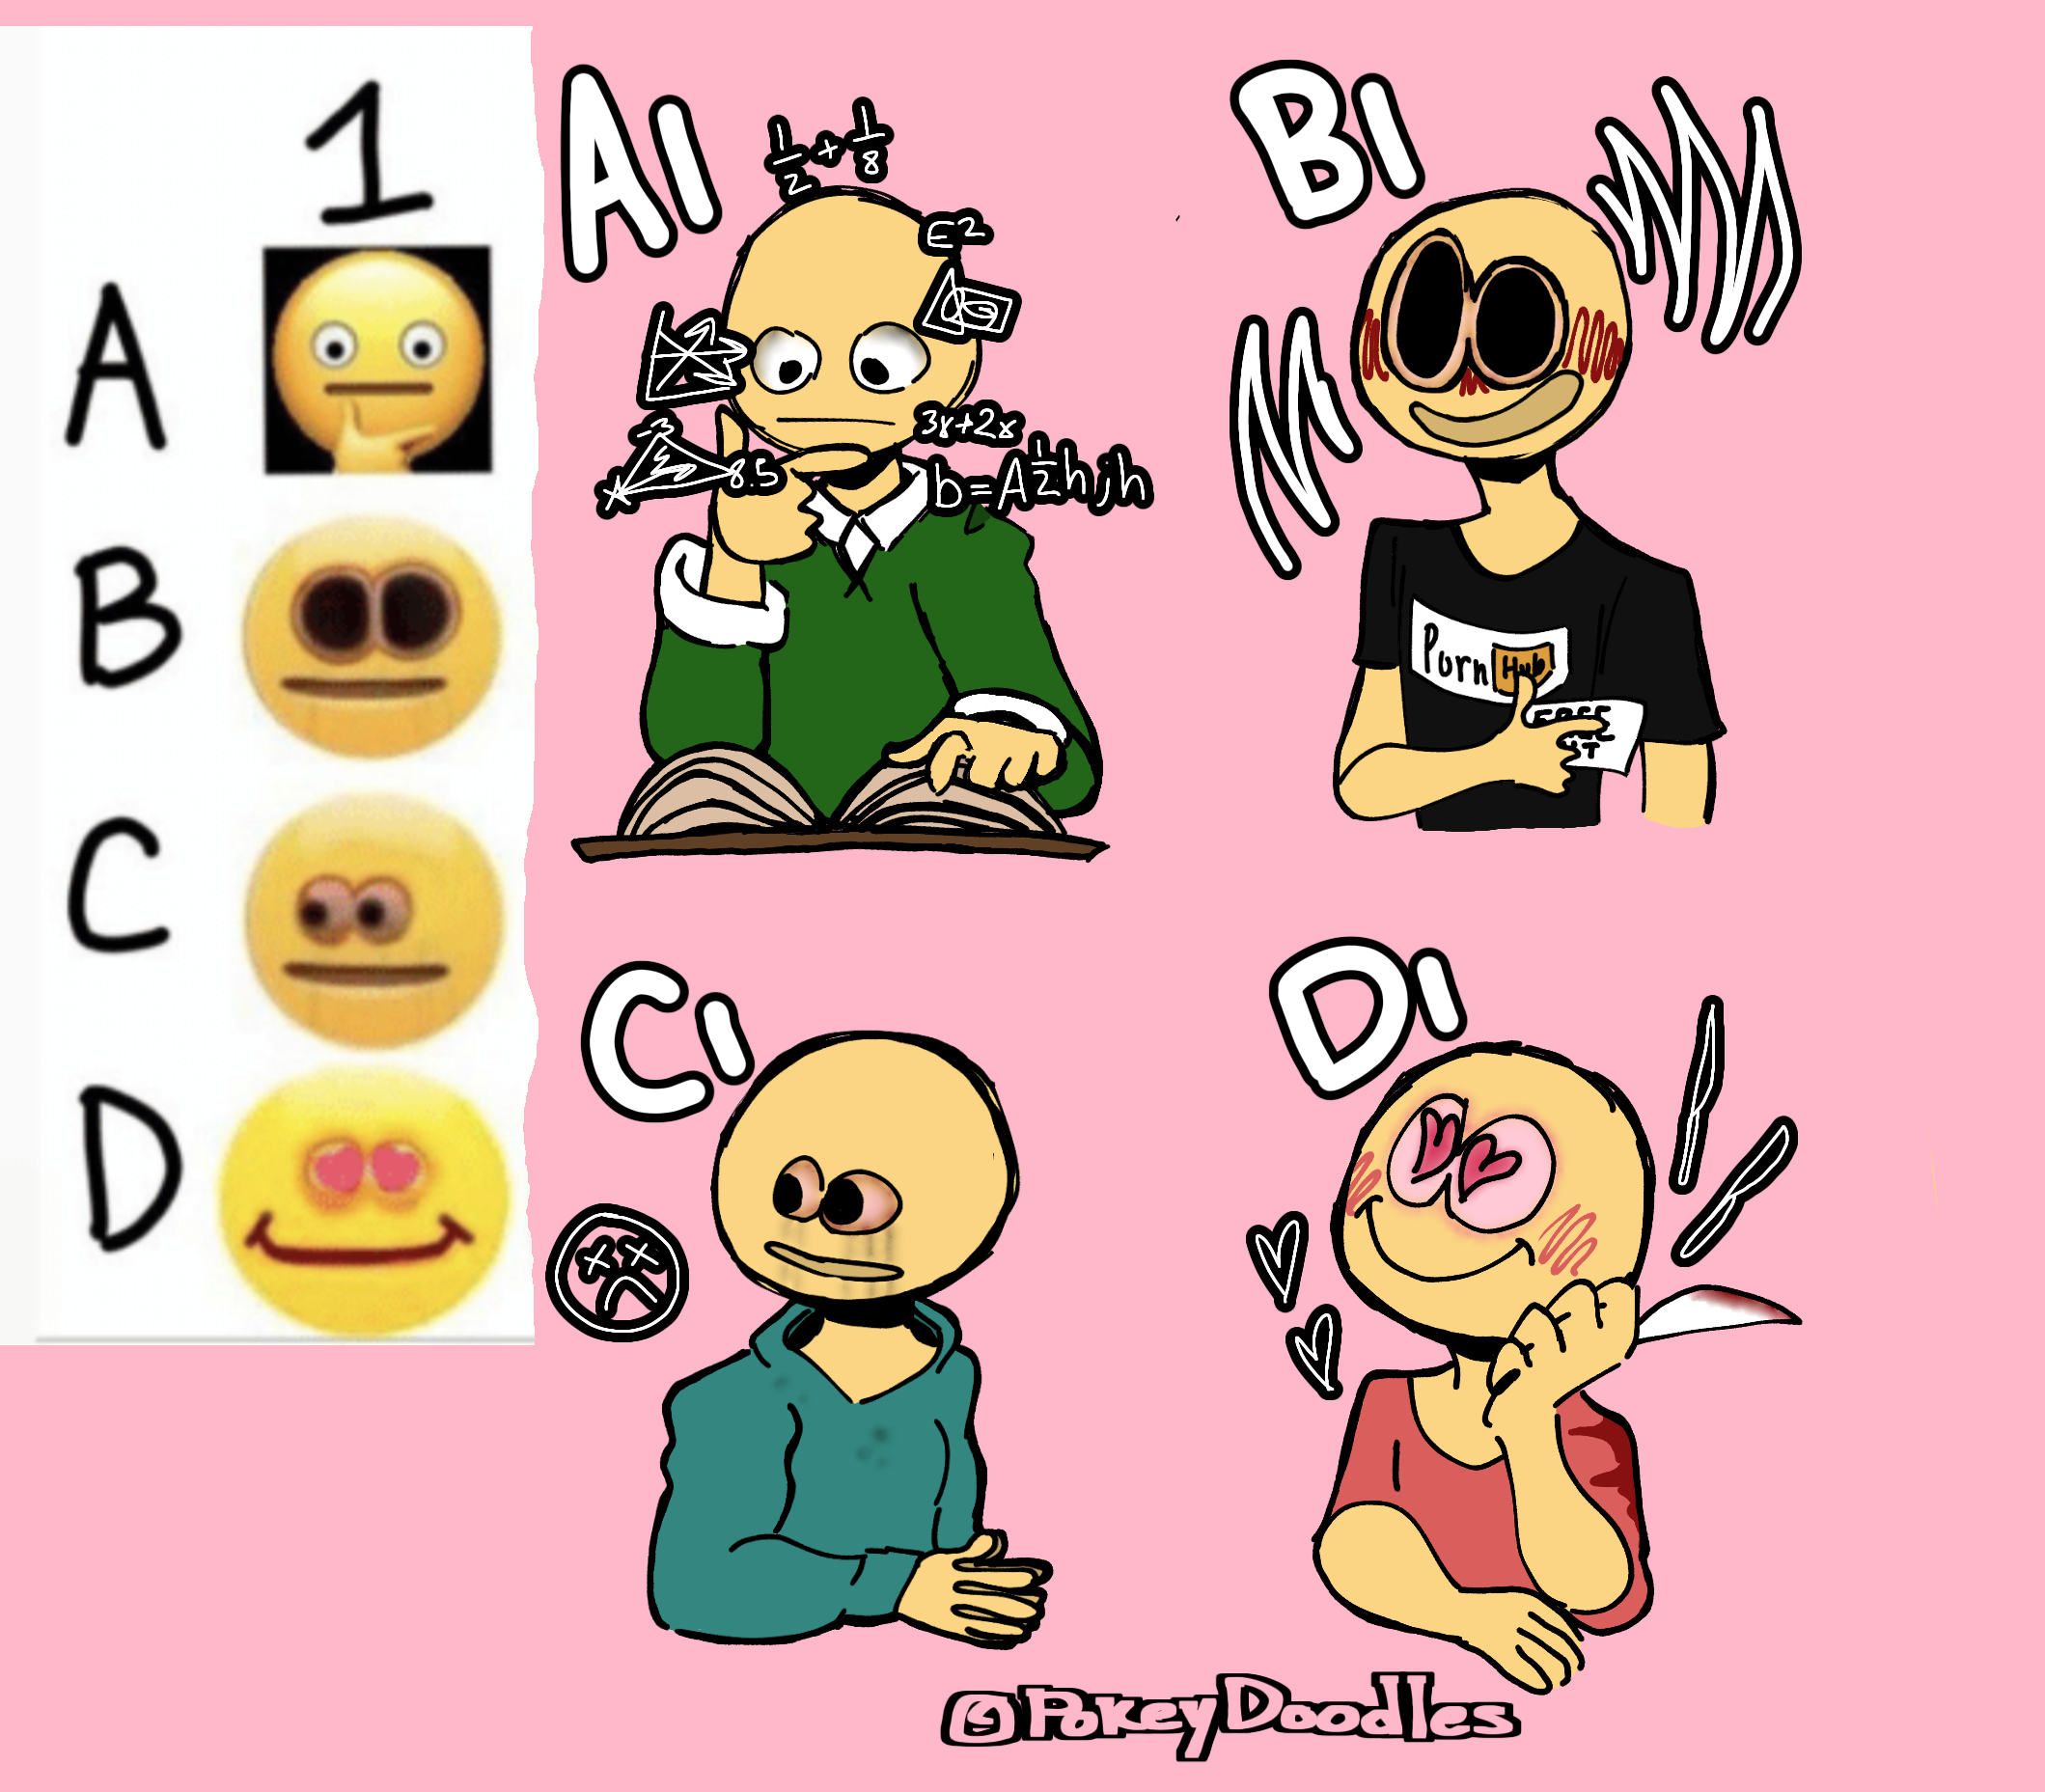 Pixilart - Cute Cursed Emoji by Mikadraws